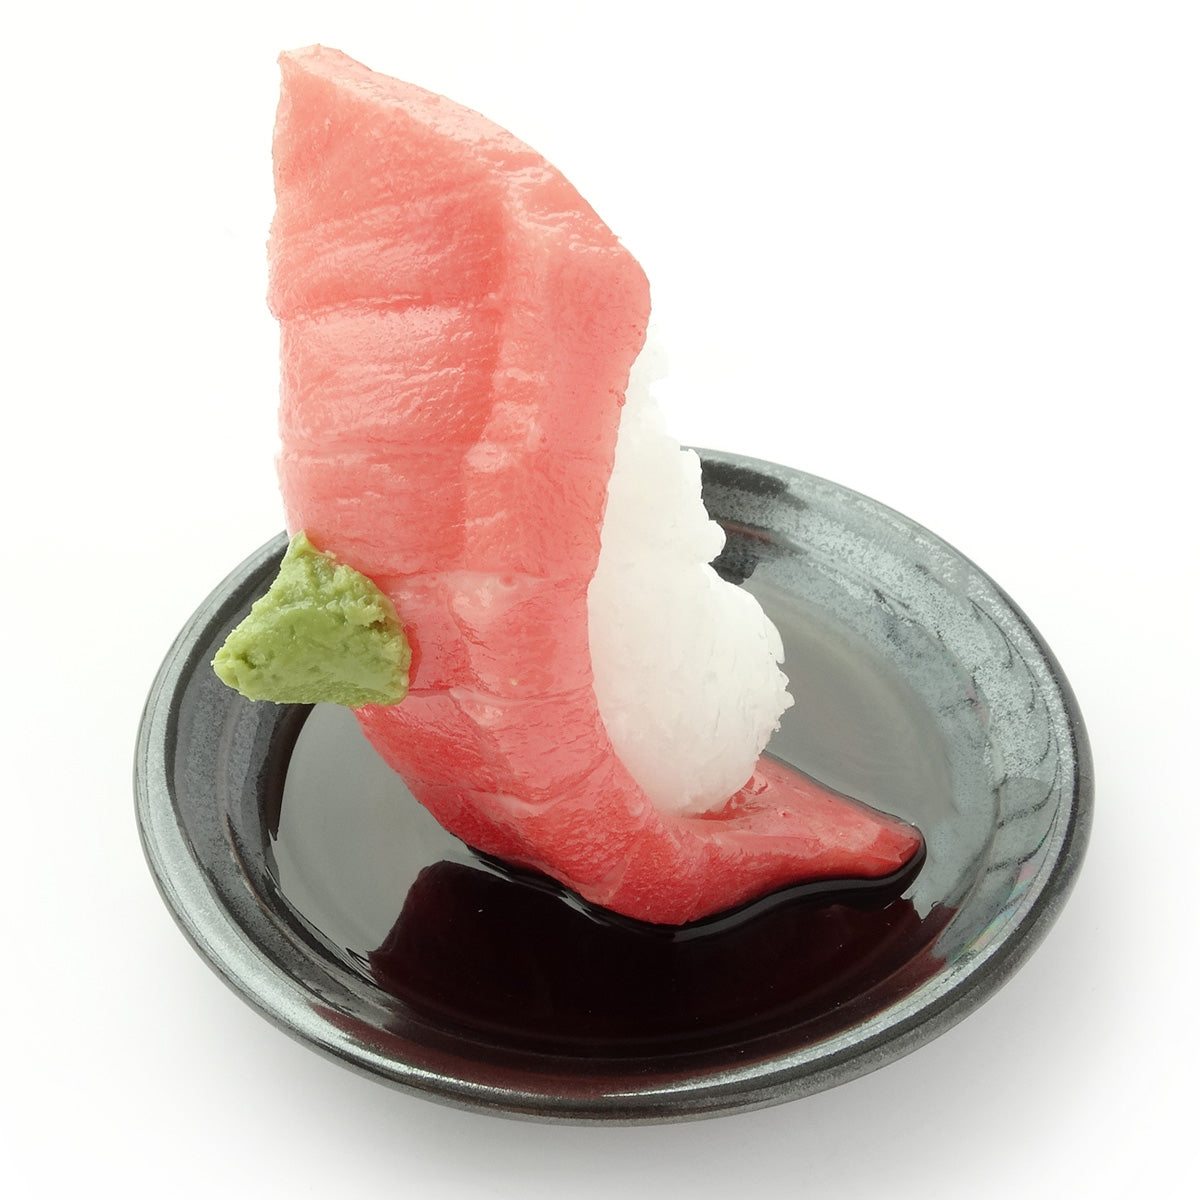 これは元祖食品サンプル屋の「つまみ寿司 中トロ」の斜めカットの商品画像です。